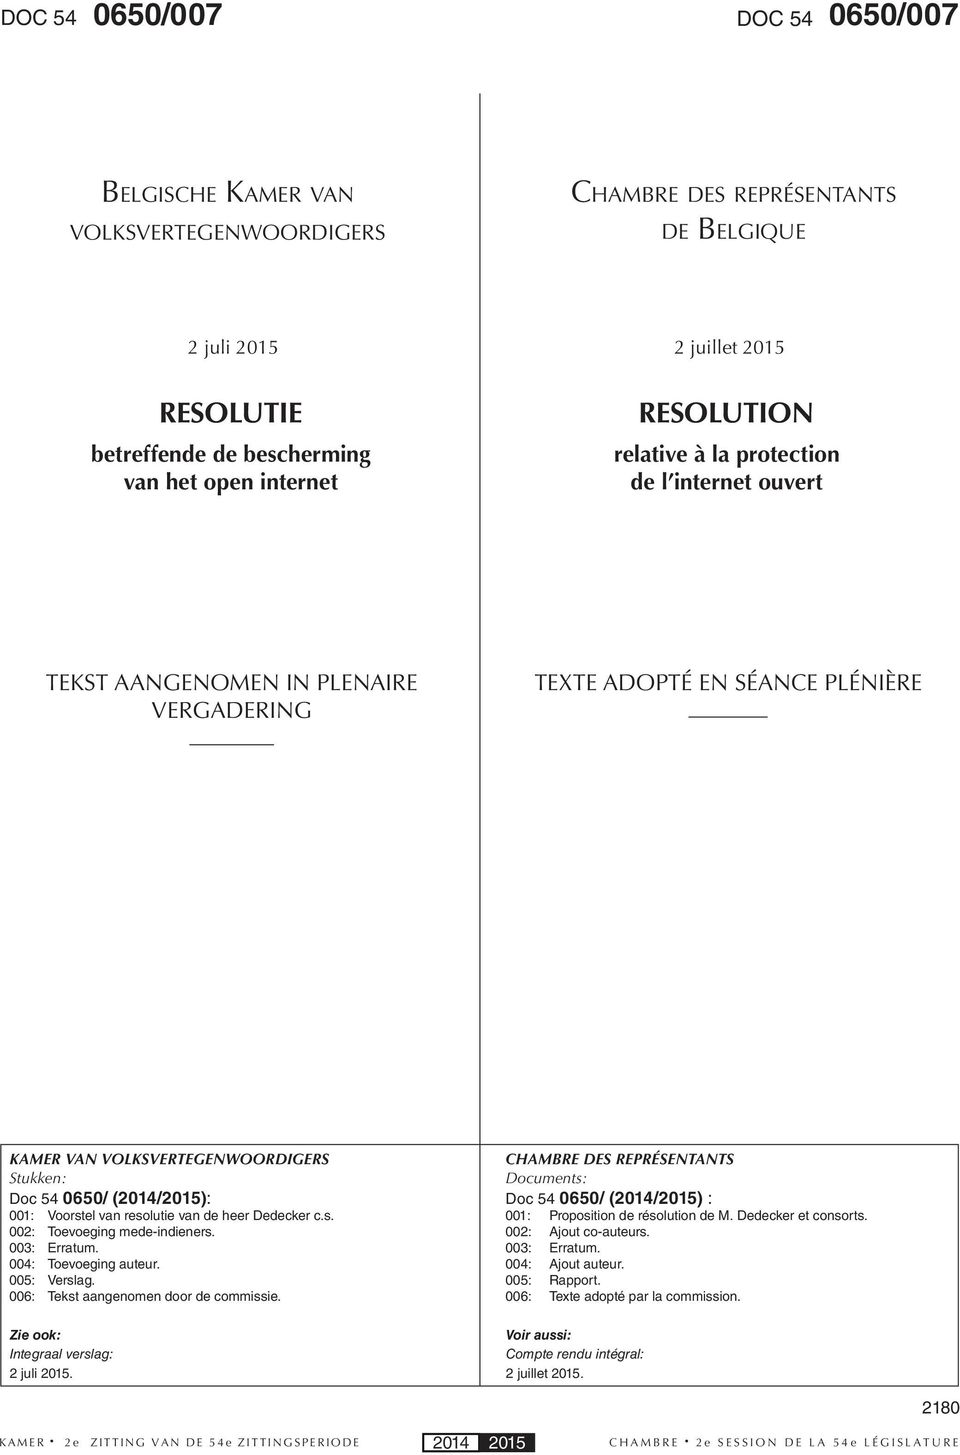 001: Voorstel van resolutie van de heer Dedecker c.s. 002: Toevoeging mede-indieners. 003: Erratum. 004: Toevoeging auteur. 005: Verslag. 006: Tekst aangenomen door de commissie.